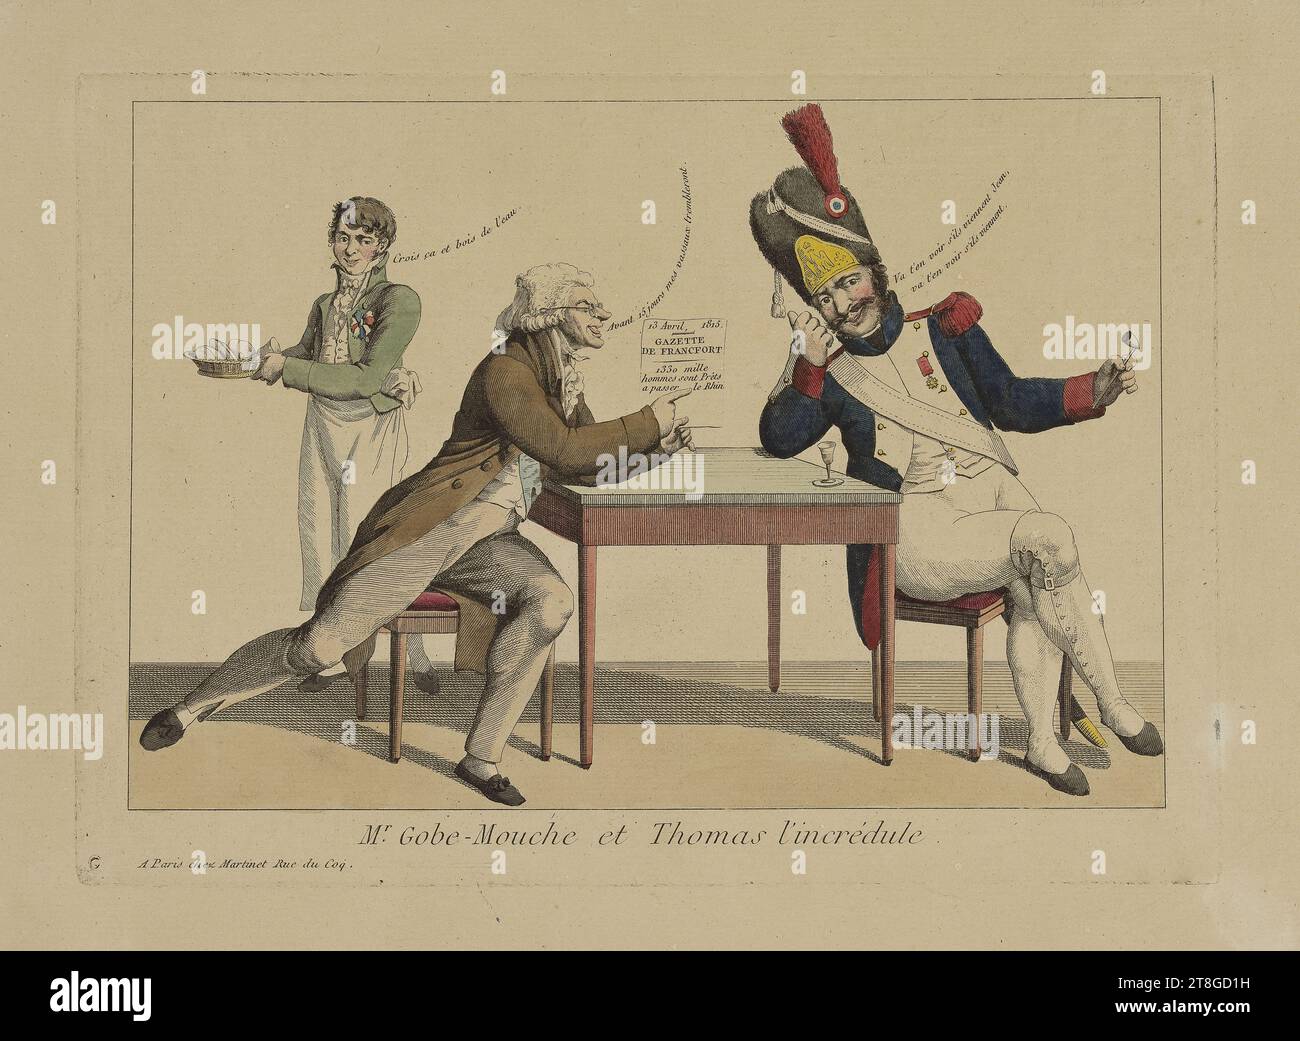 M. Gobe-mouche et Thomas l'incrédule, graveur, in 1815, impression, Art graphique, impression, gravure, Dimensions - travail : hauteur : 25 cm, largeur : 33,5 cm Banque D'Images